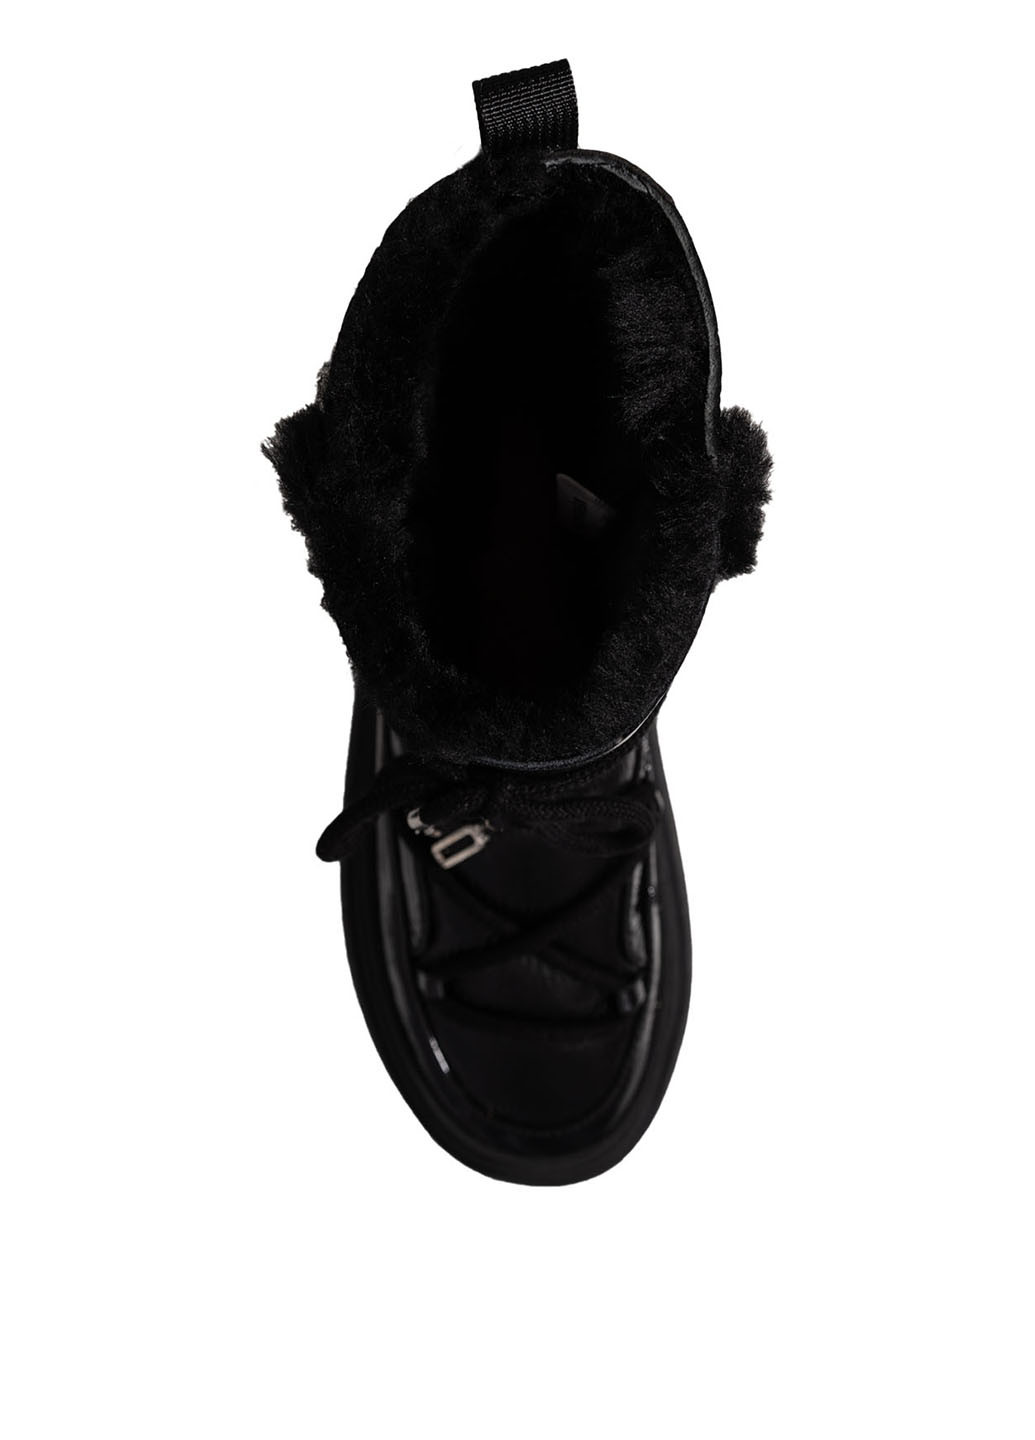 Зимние ботинки Verendina со шнуровкой, лаковые, с мехом